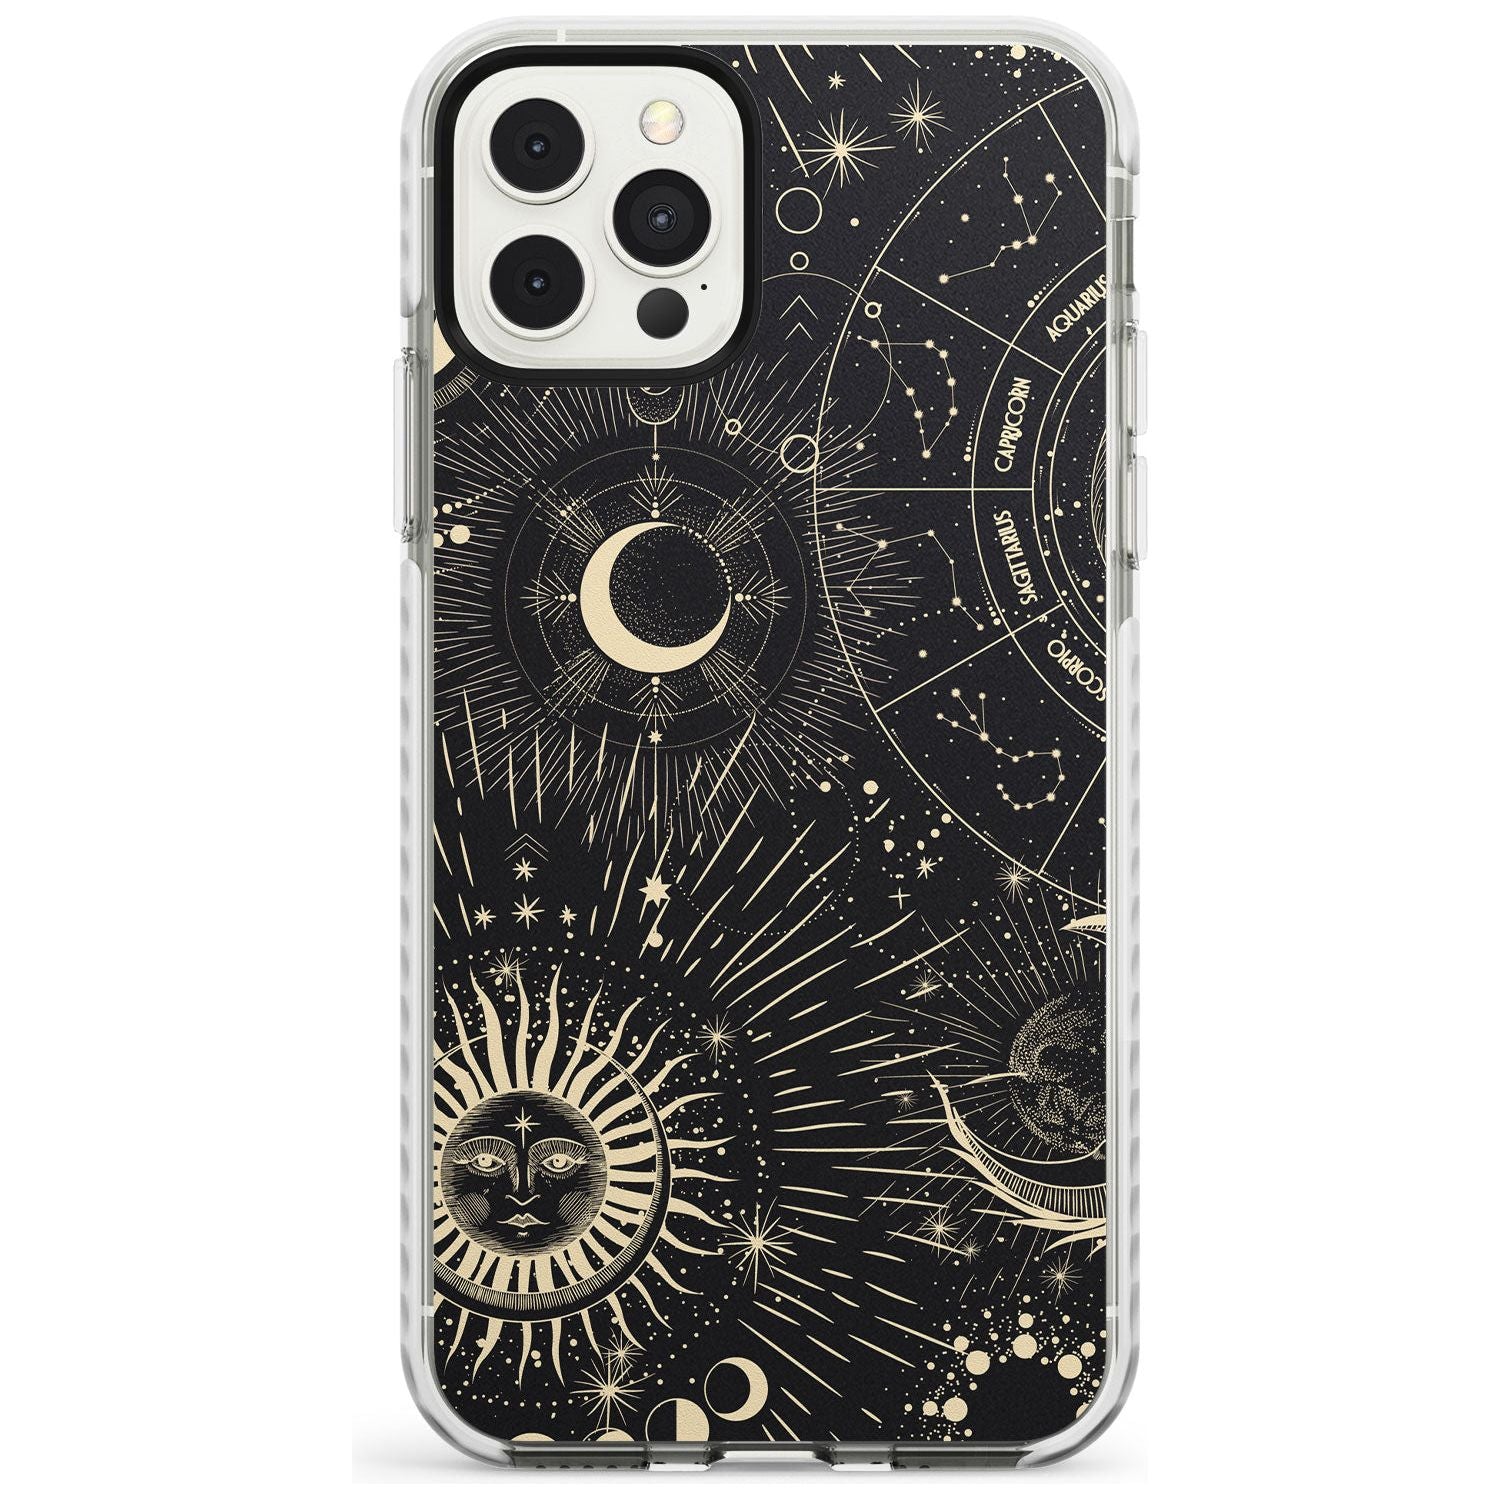 Sun & Symbols Slim TPU Phone Case for iPhone 11 Pro Max